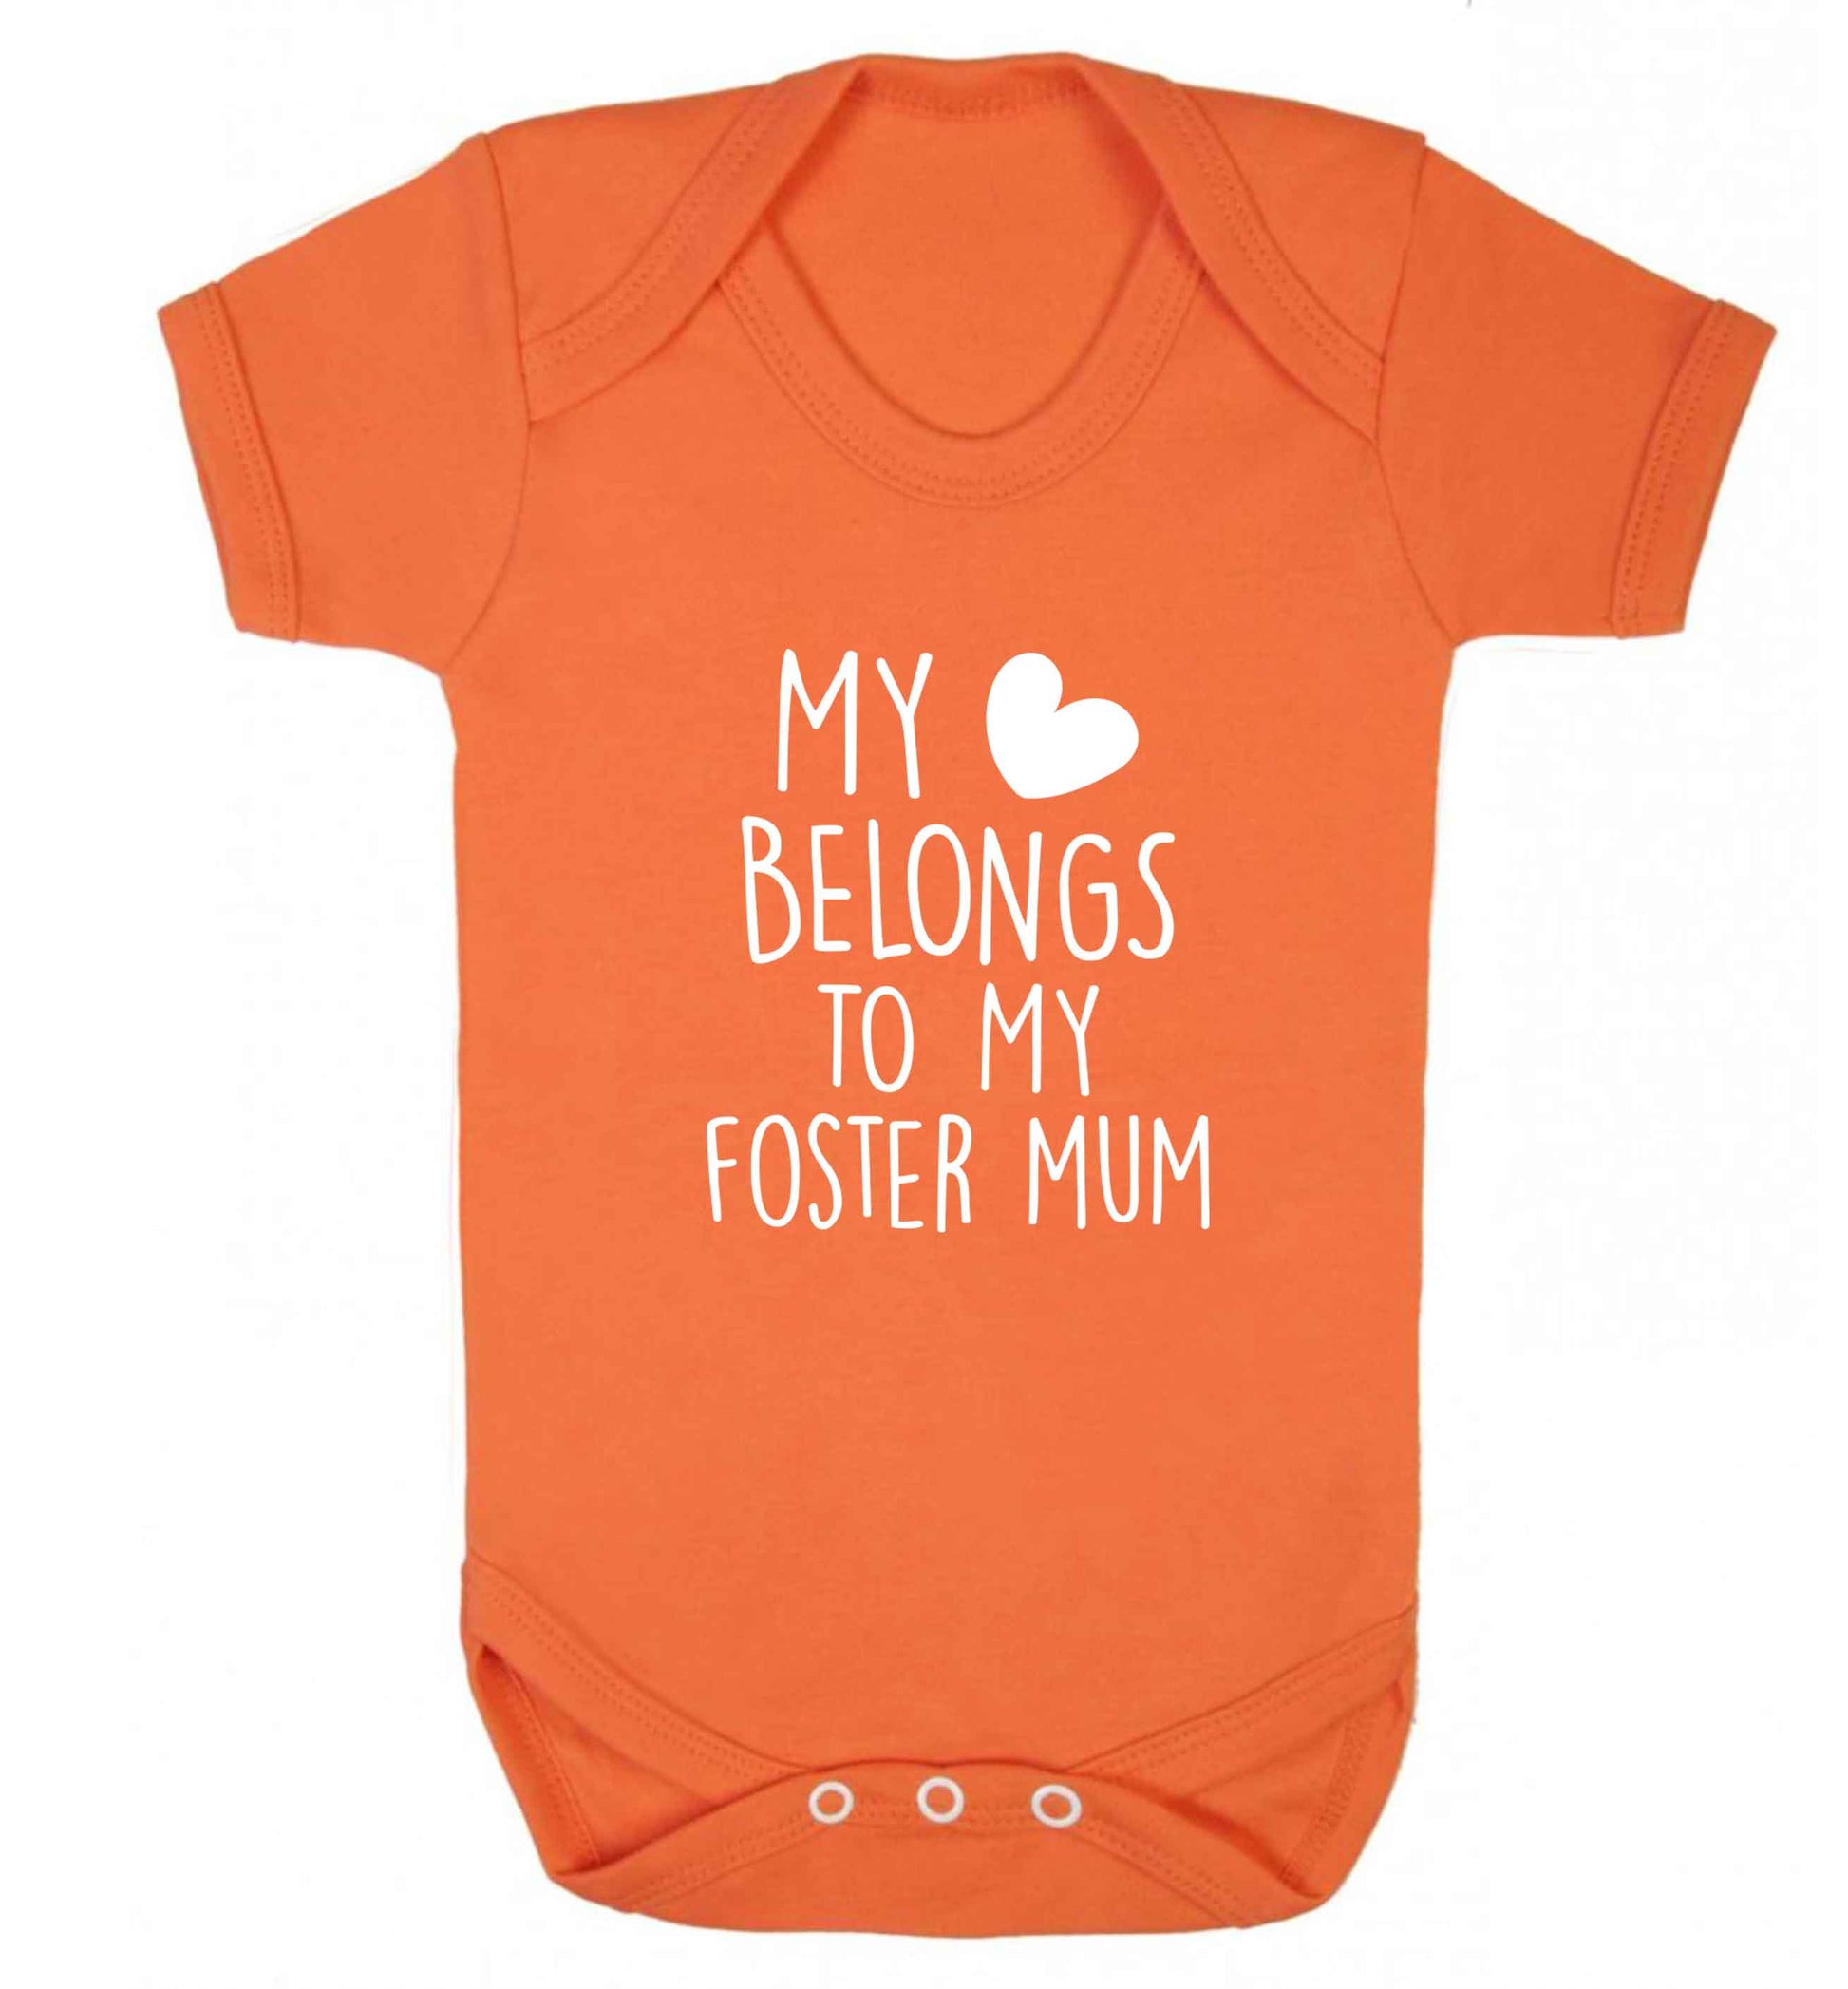 My heart belongs to my foster mum baby vest orange 18-24 months